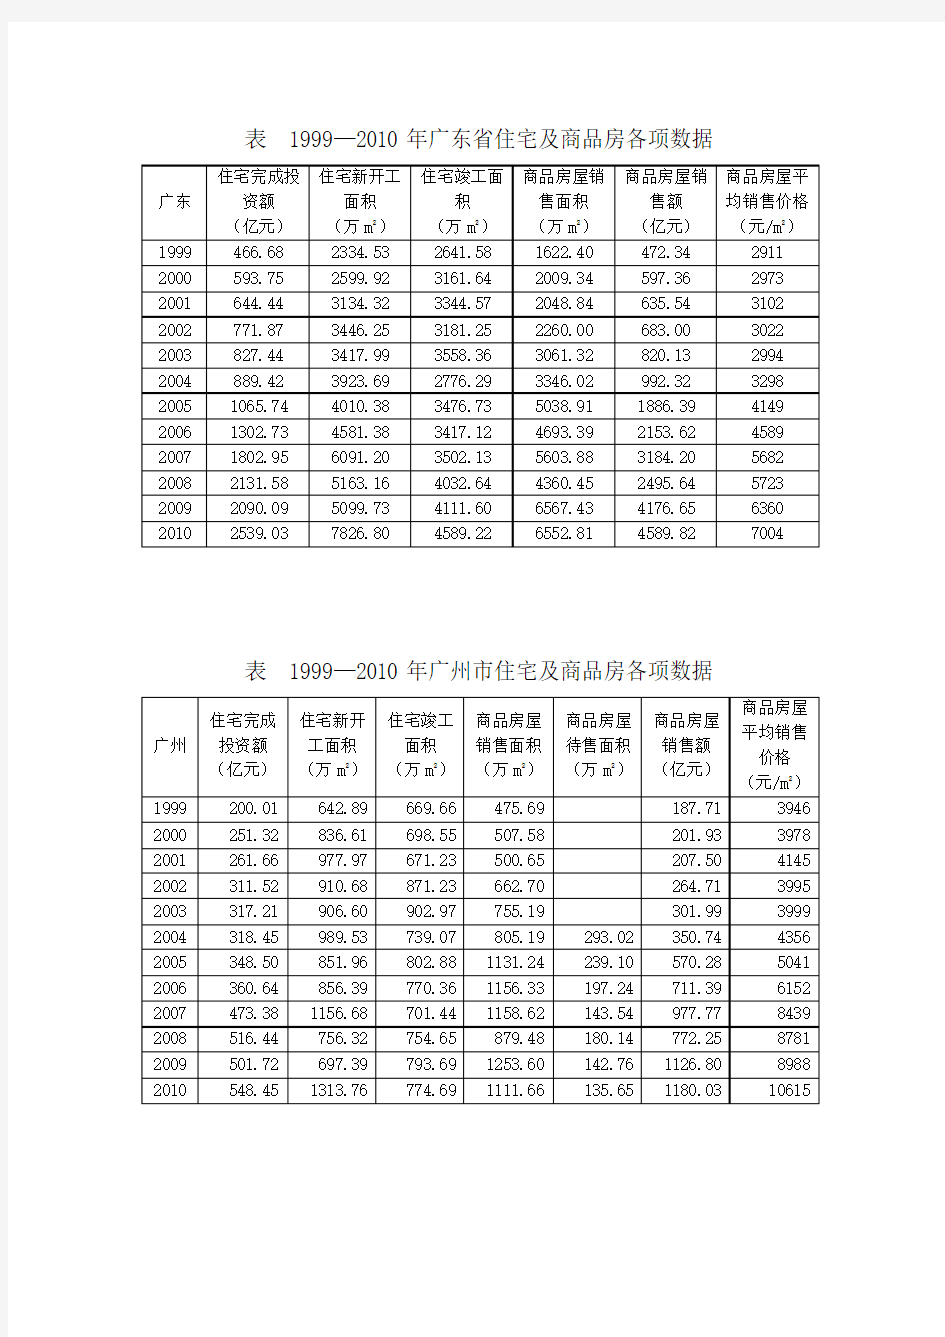 广东省及广州市各项指标数据(住宅房地产开发、人均可支配收入、常住人口)